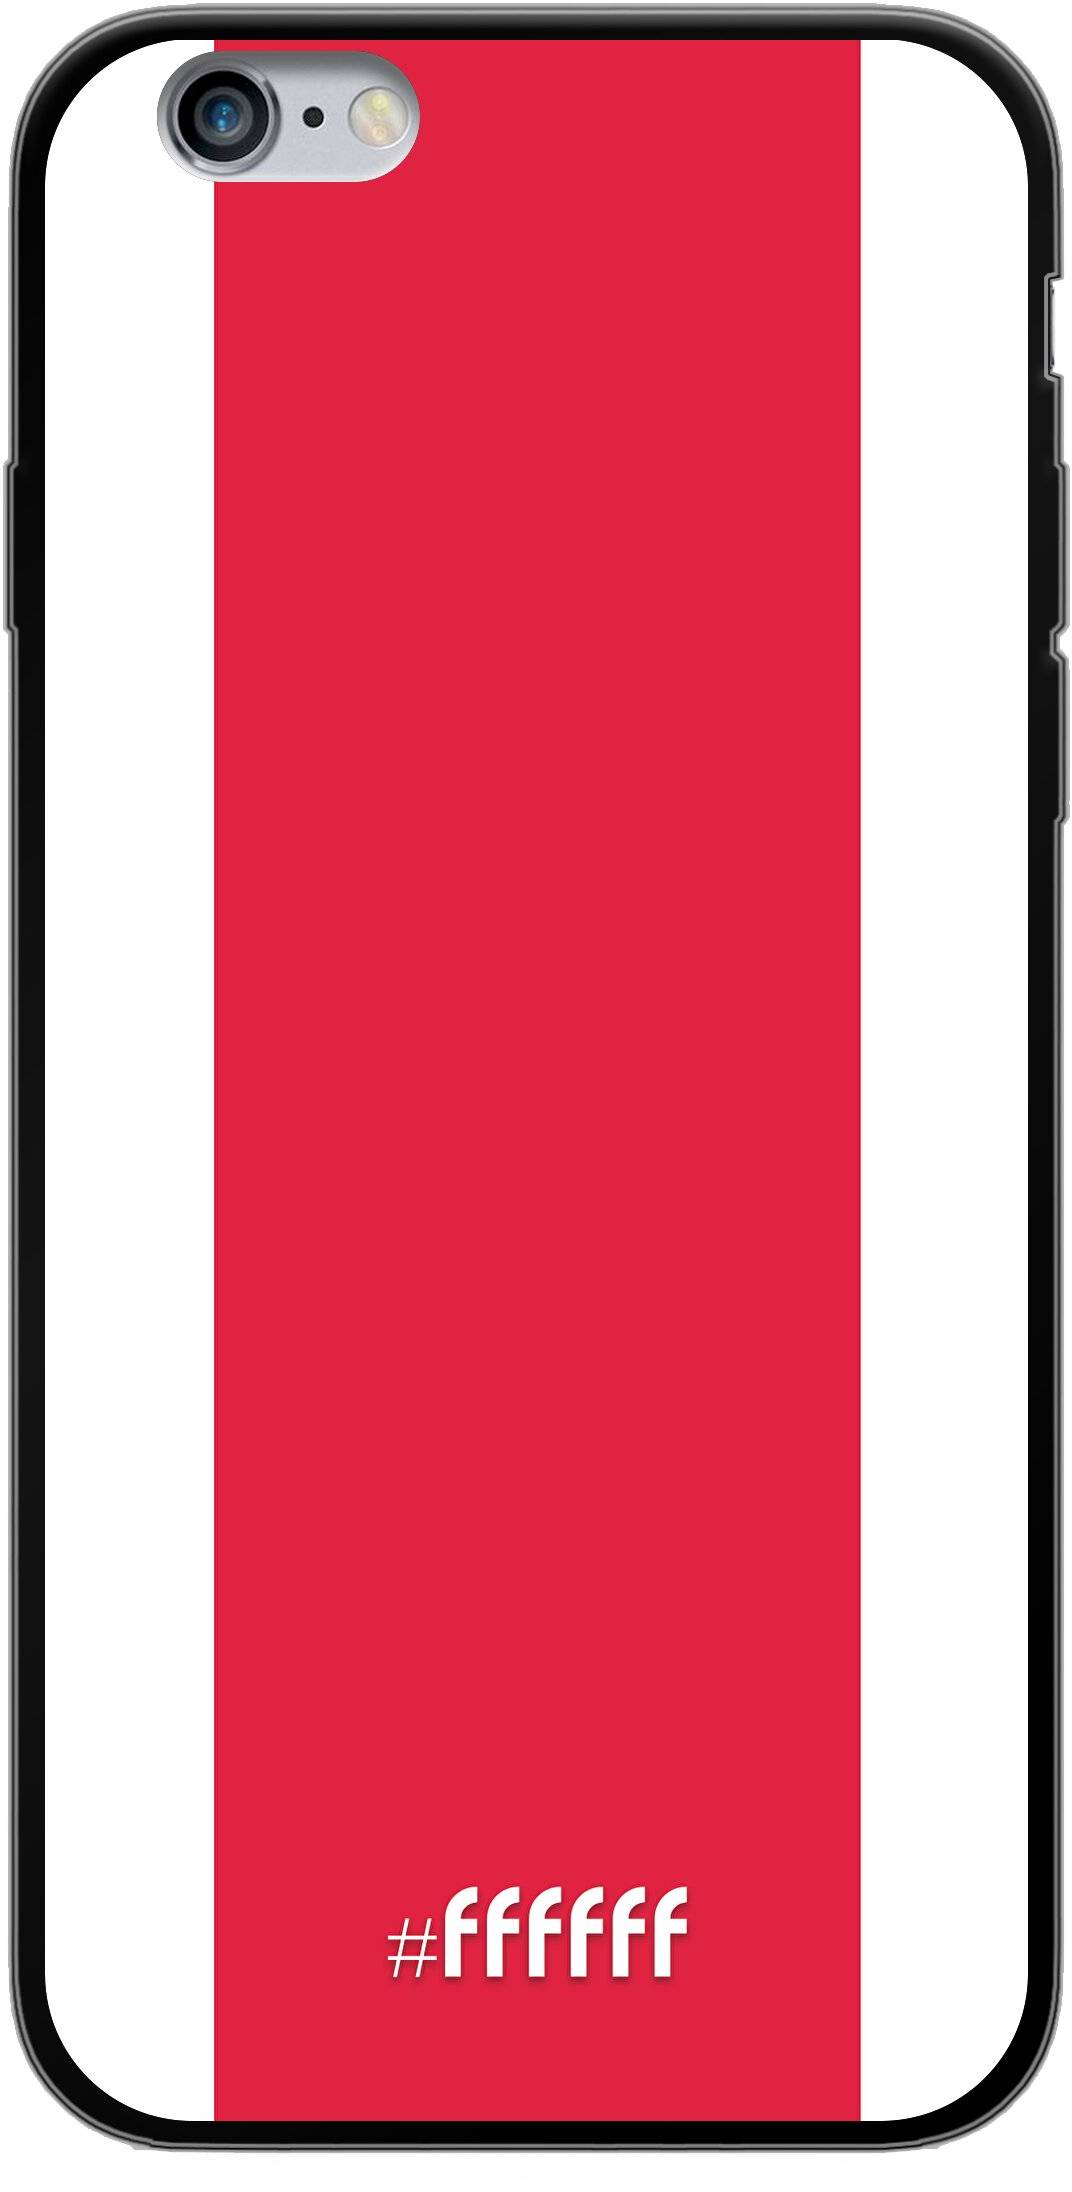 AFC Ajax iPhone 6s